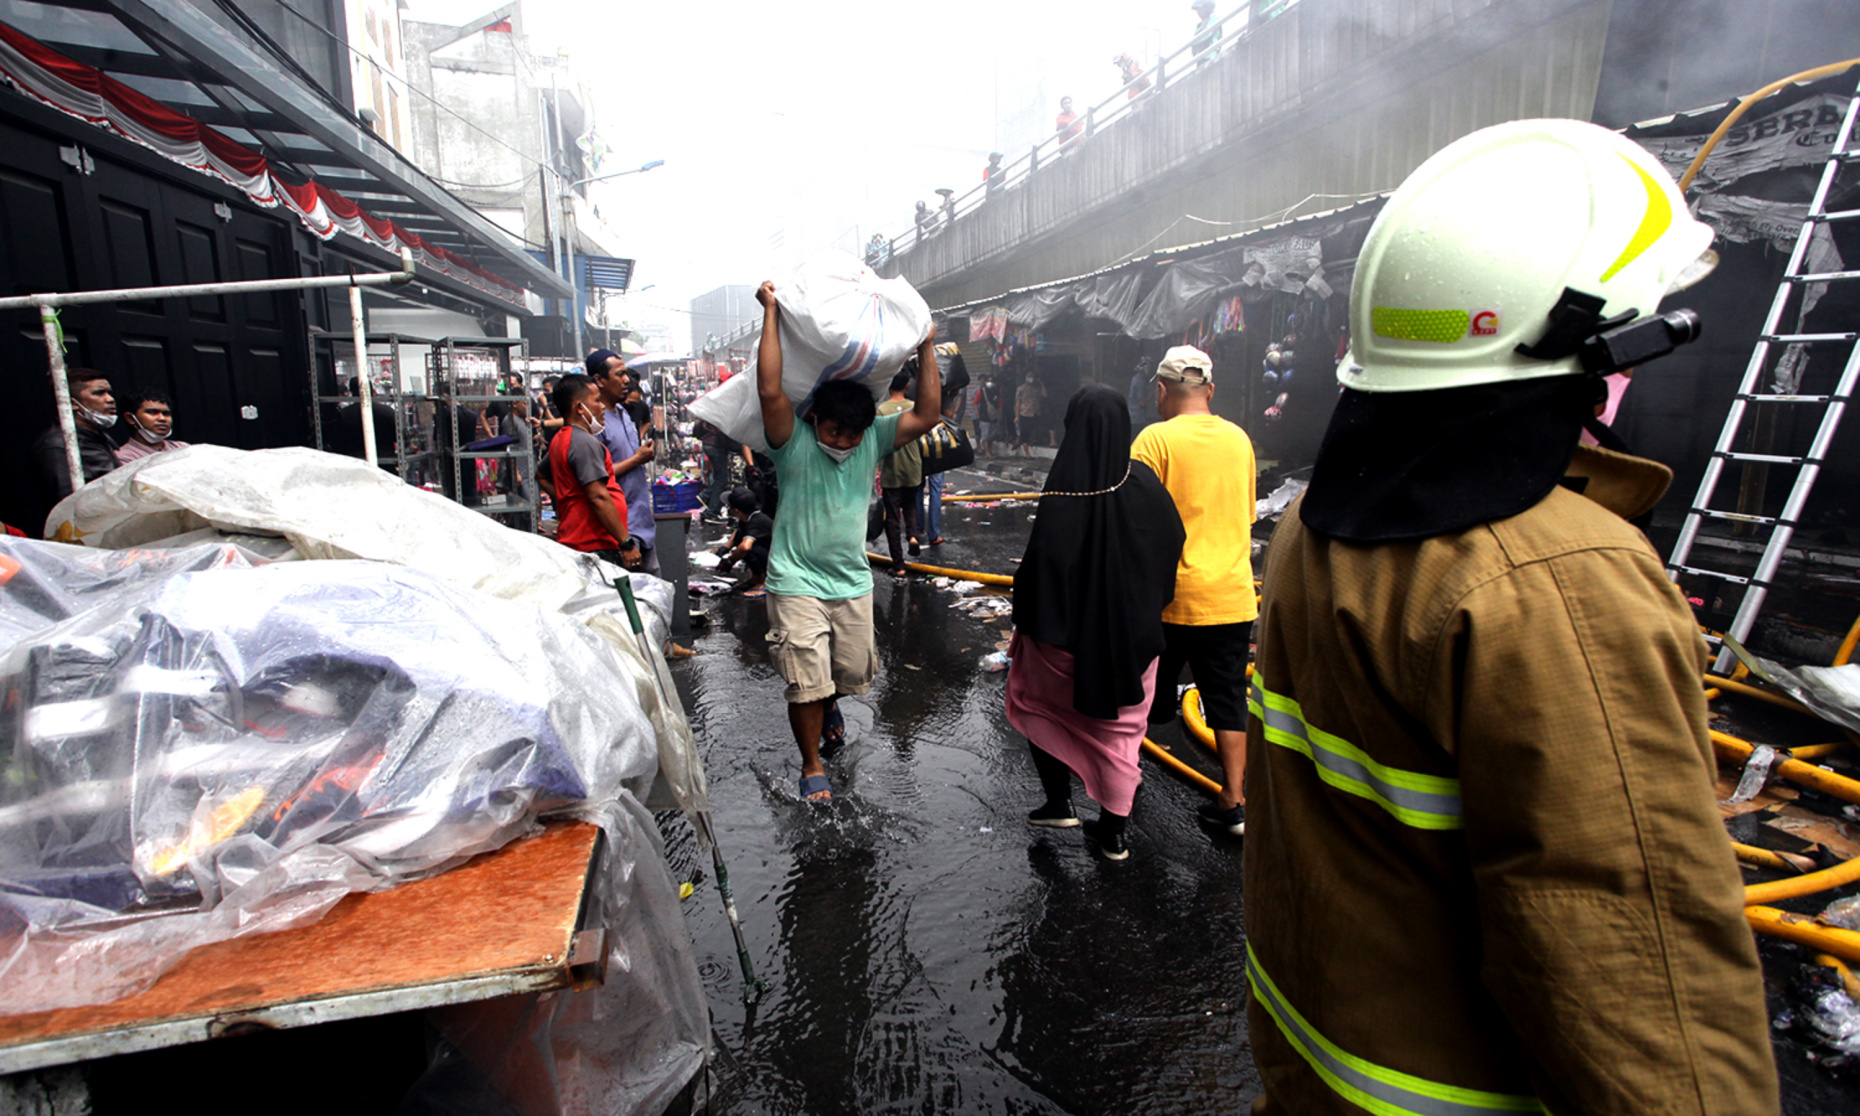 Kebakaran menghanguskan puluhan kios milik warga di pasar pagi esemka siang tadi (Ashar/SinPo.id)